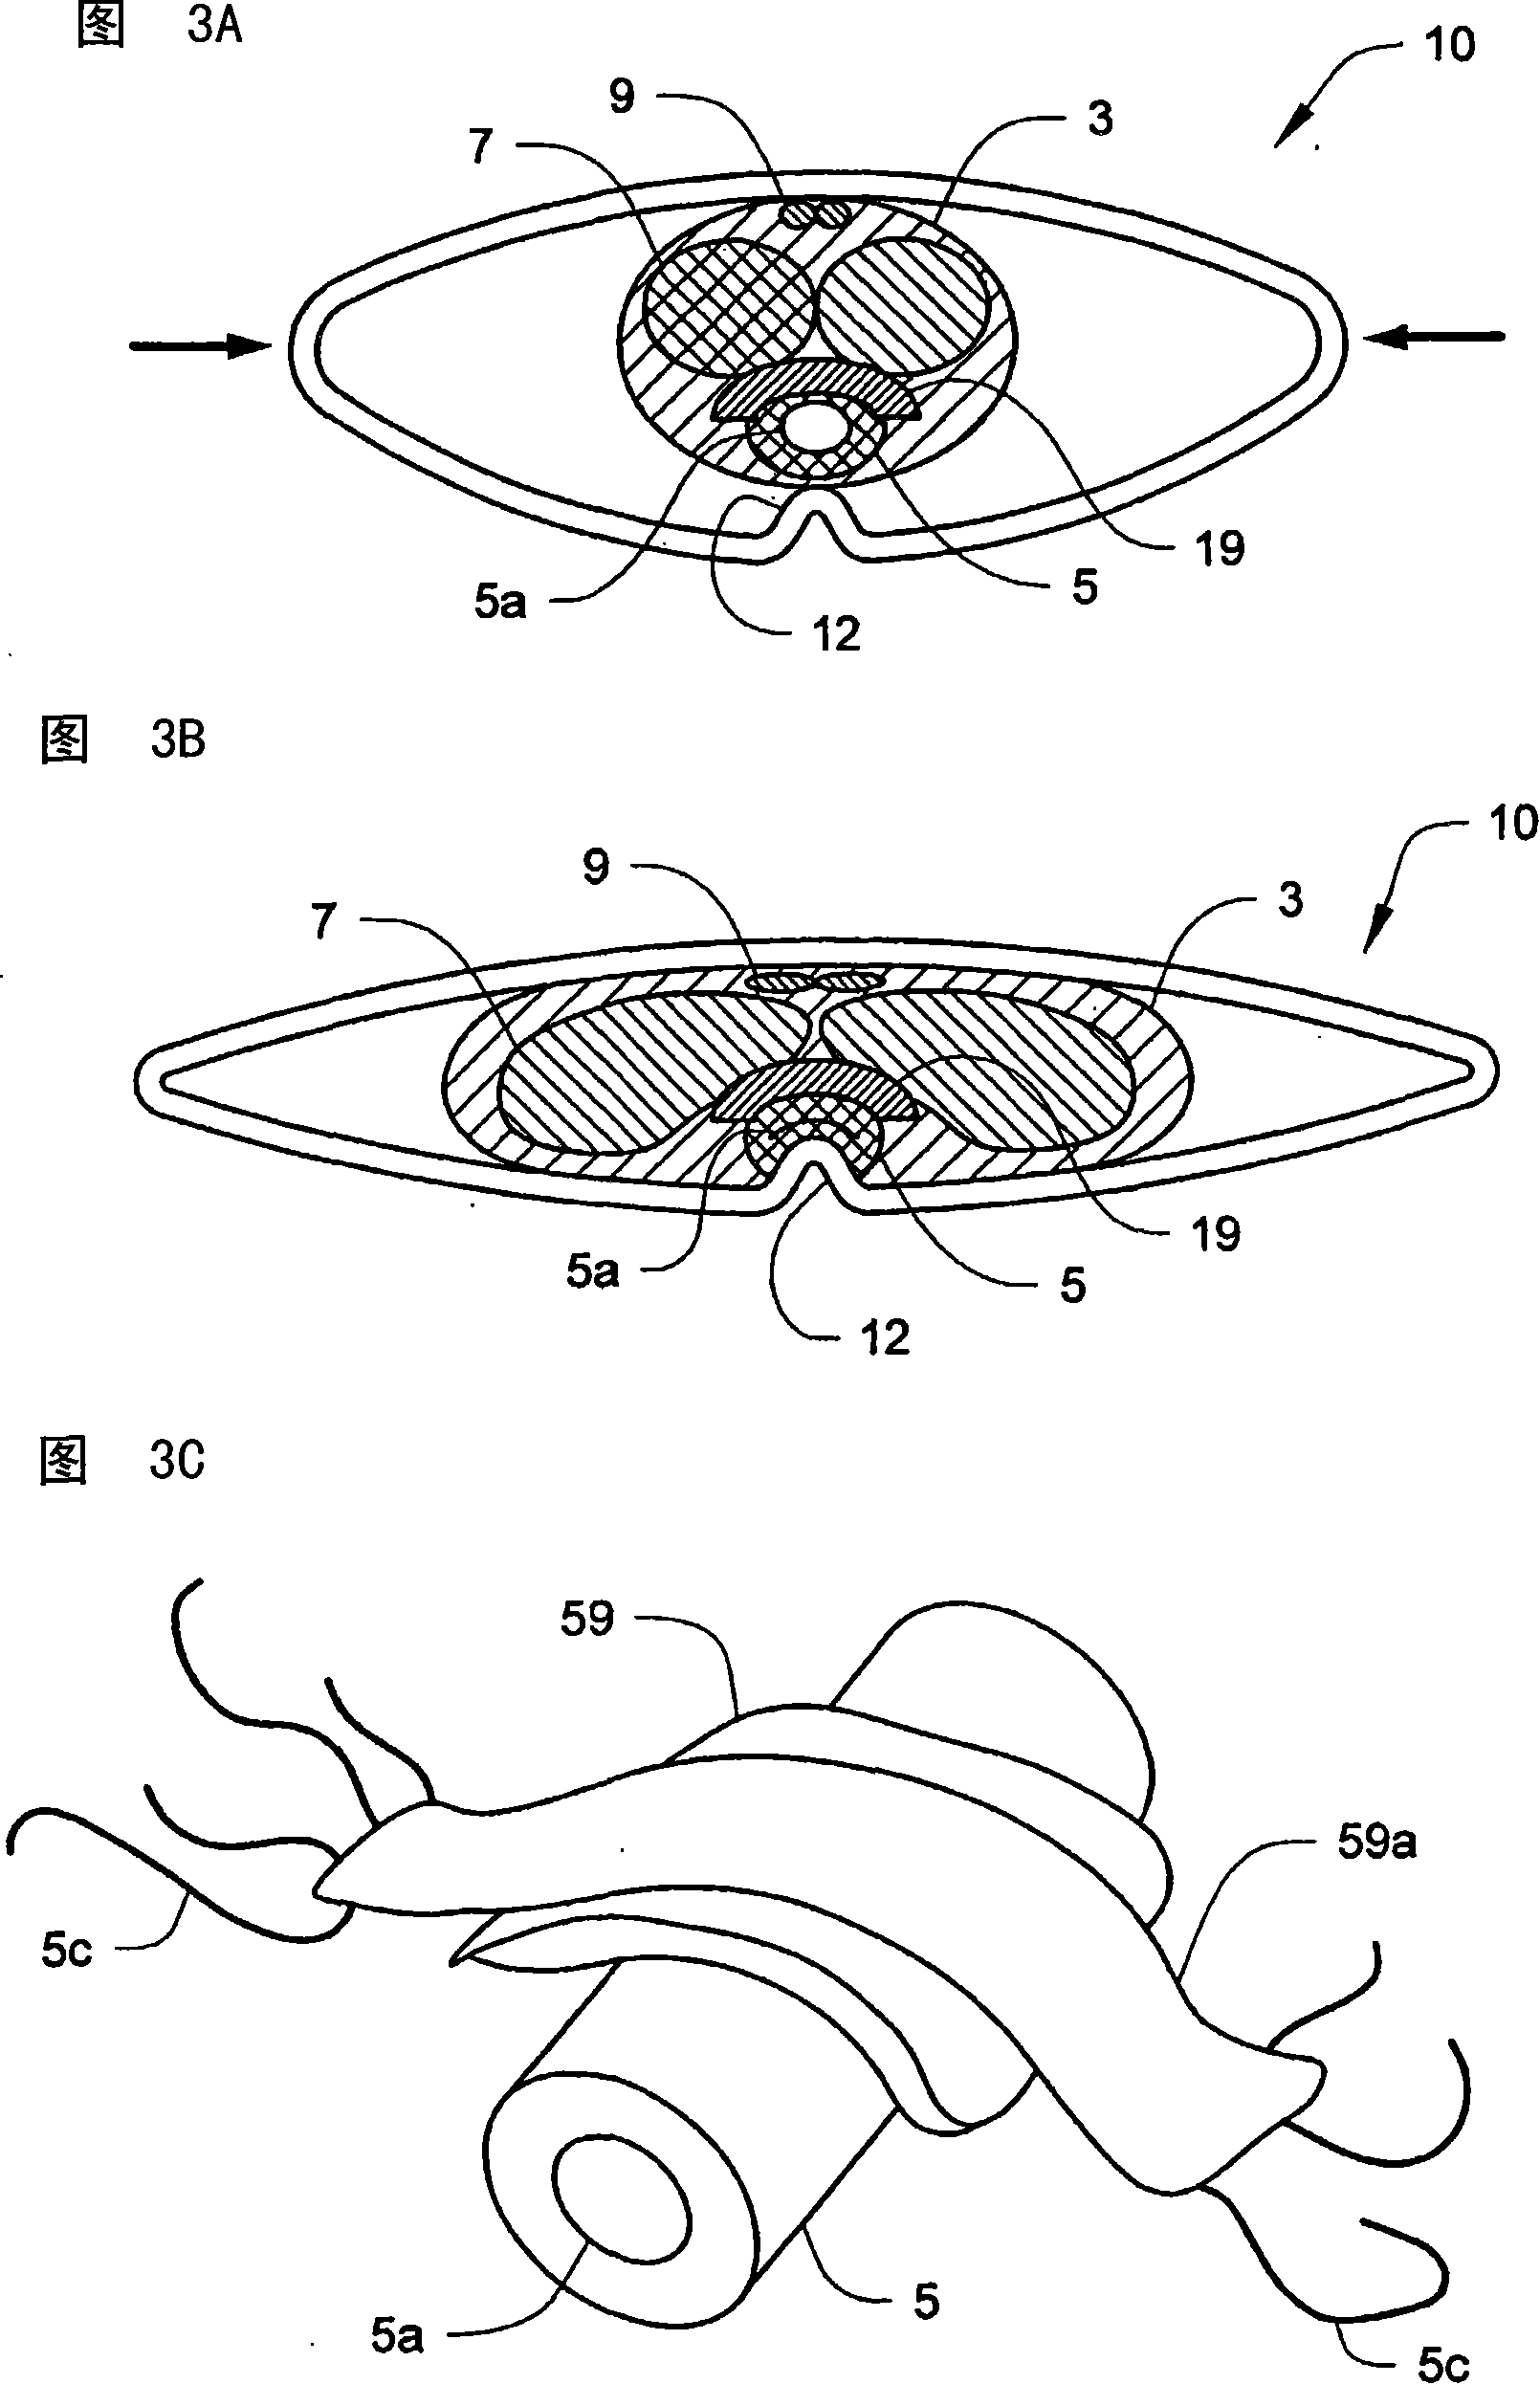 Penile compression device